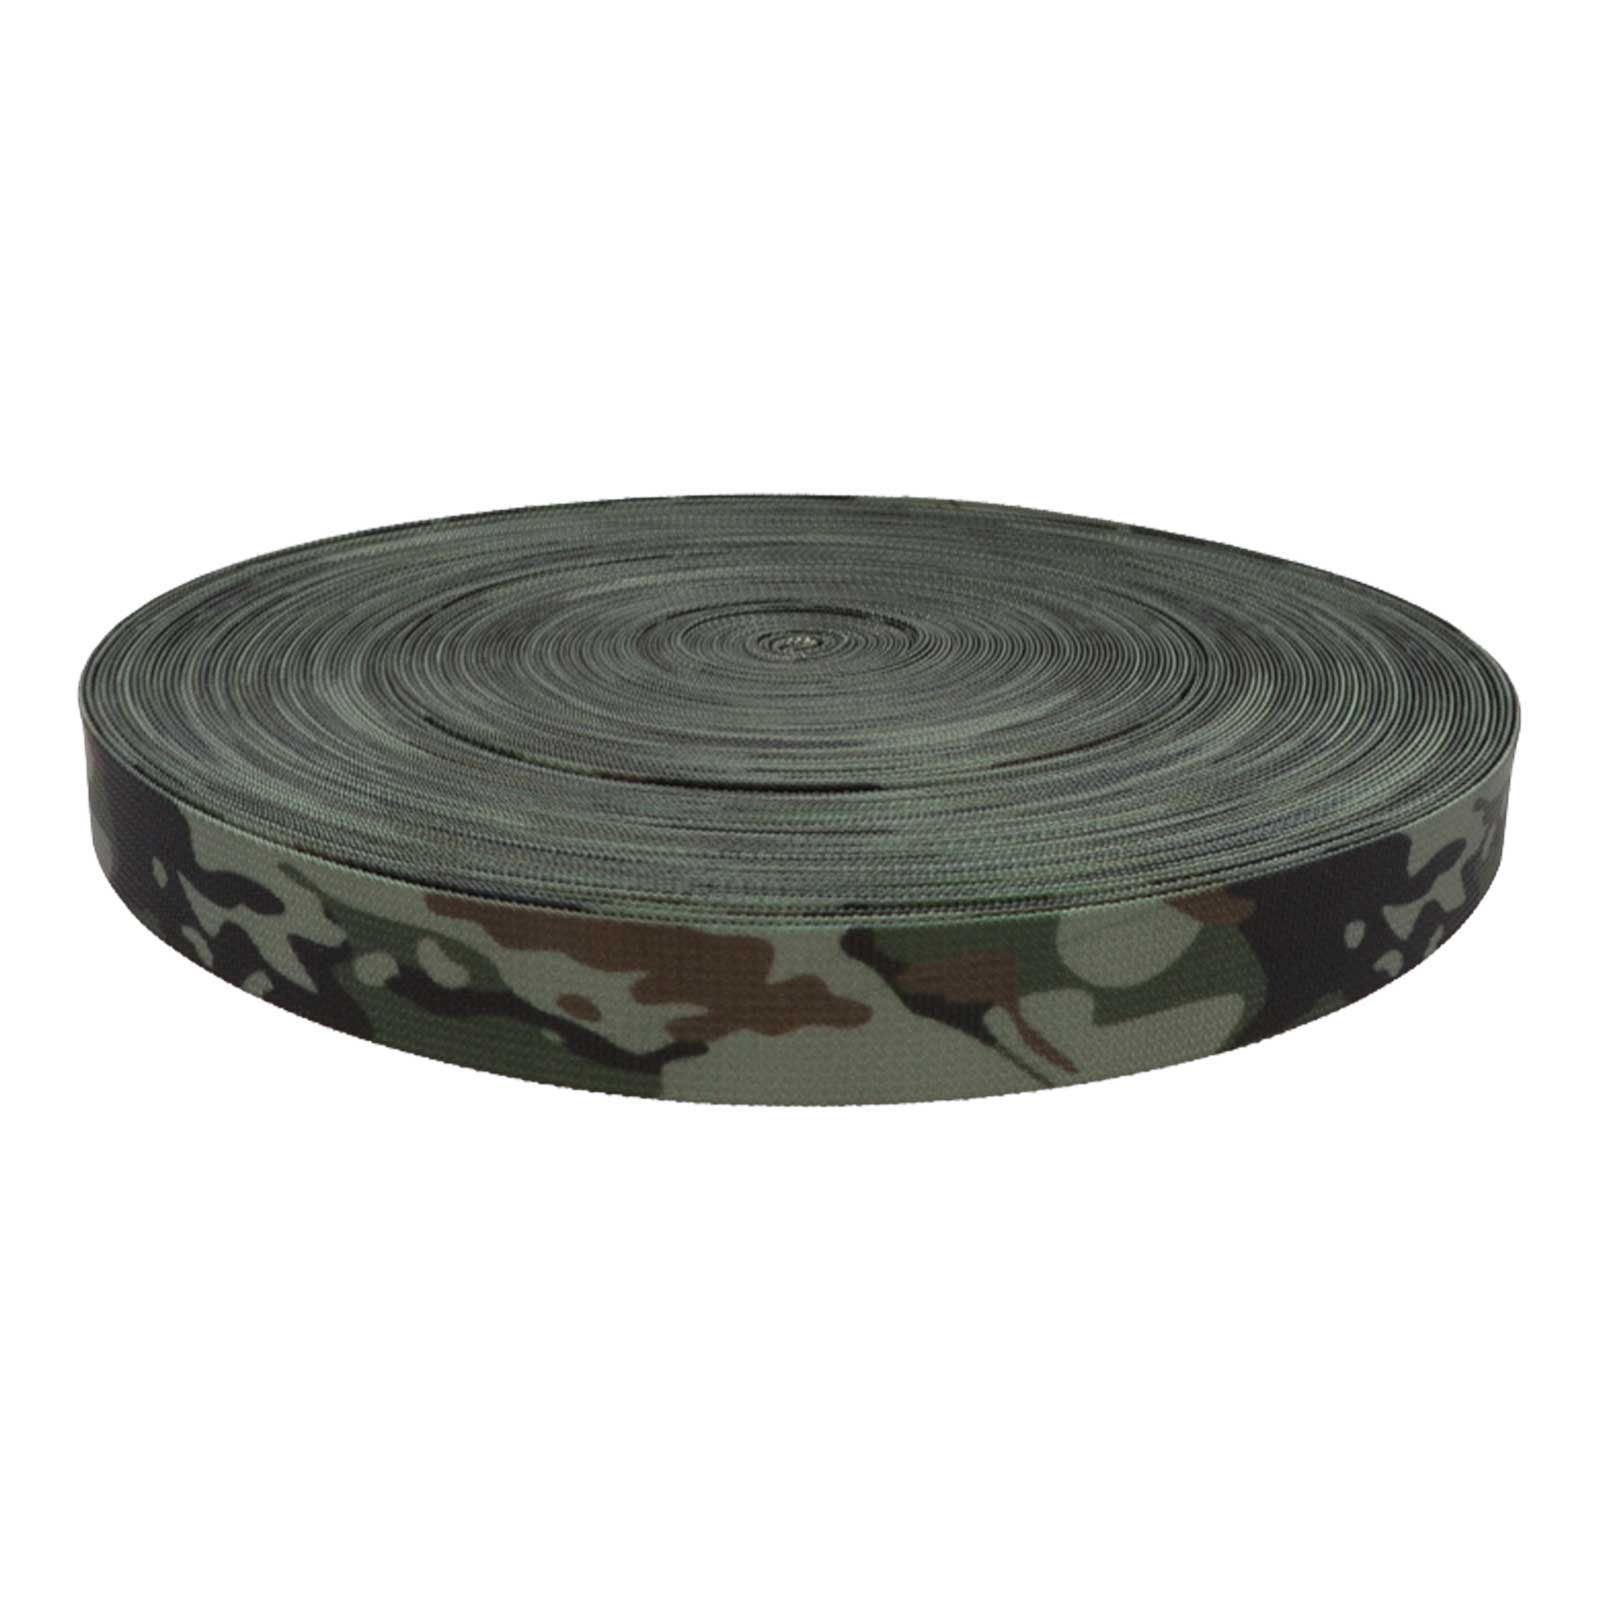 Rollladengurt, dark maDDma camouflage Design im Tarnmuster Gurtband 1m